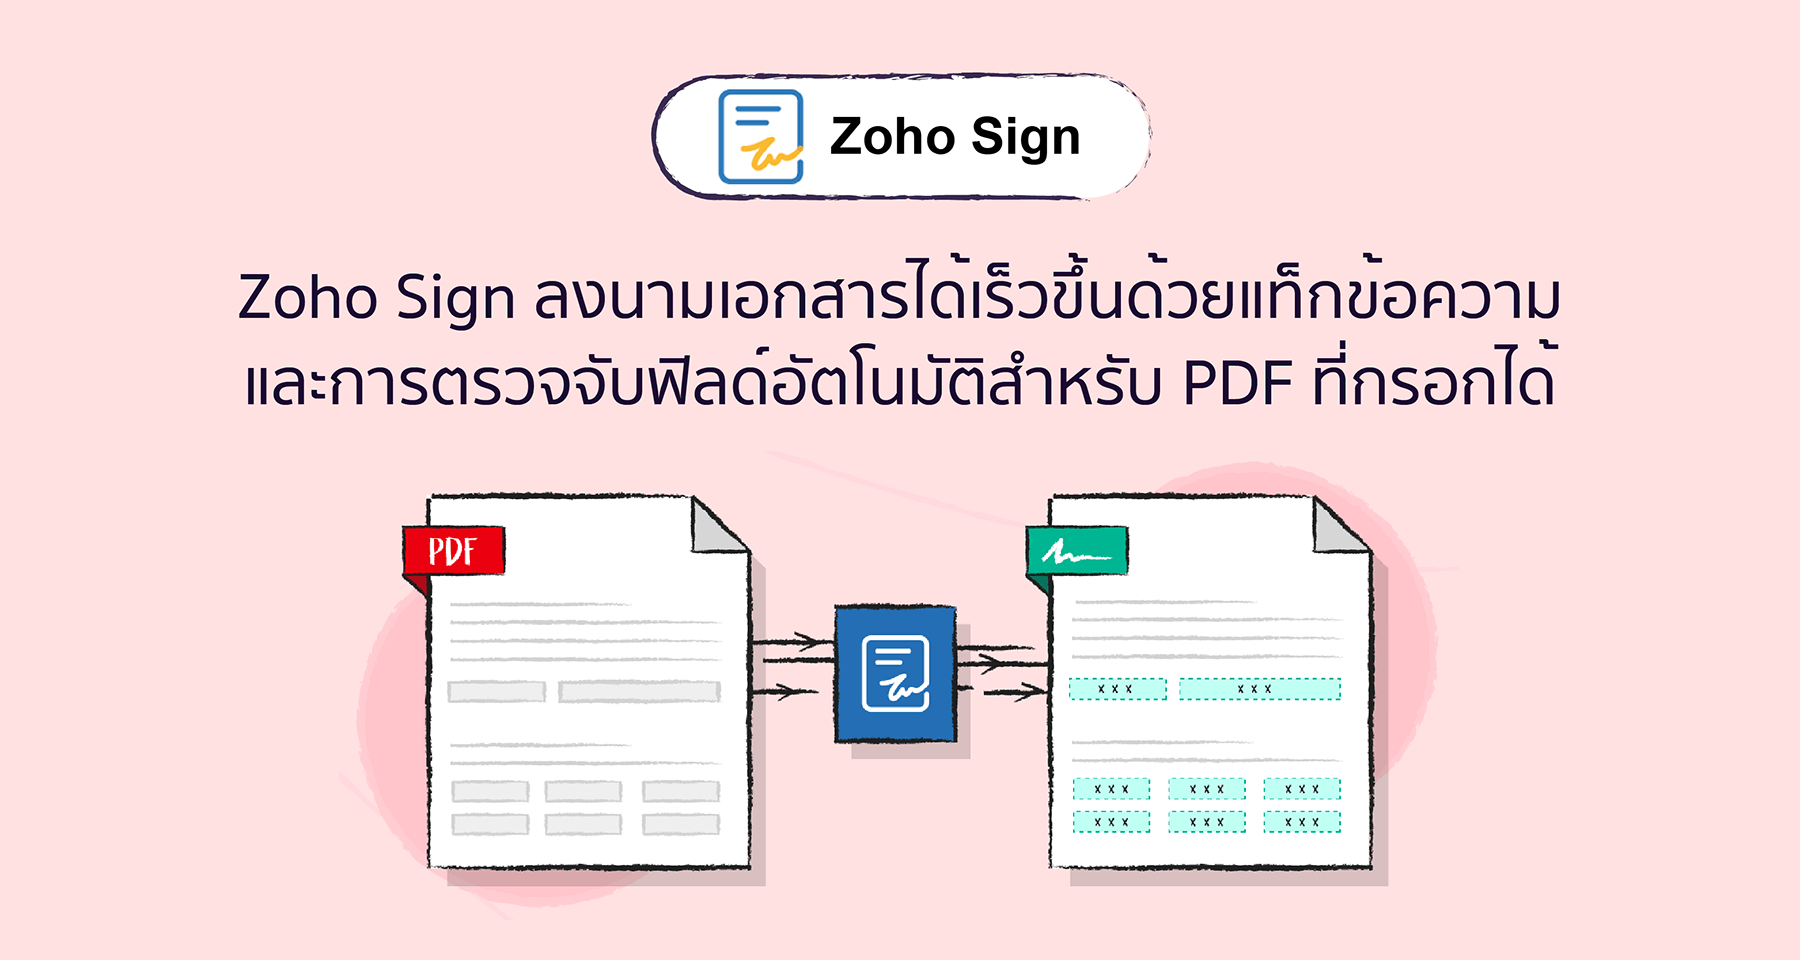 Zoho Sign ลงนามเอกสารได้เร็วขึ้นด้วยแท็กข้อความและการตรวจจับฟิลด์อัตโนมัติสำหรับ PDF ที่กรอกได้